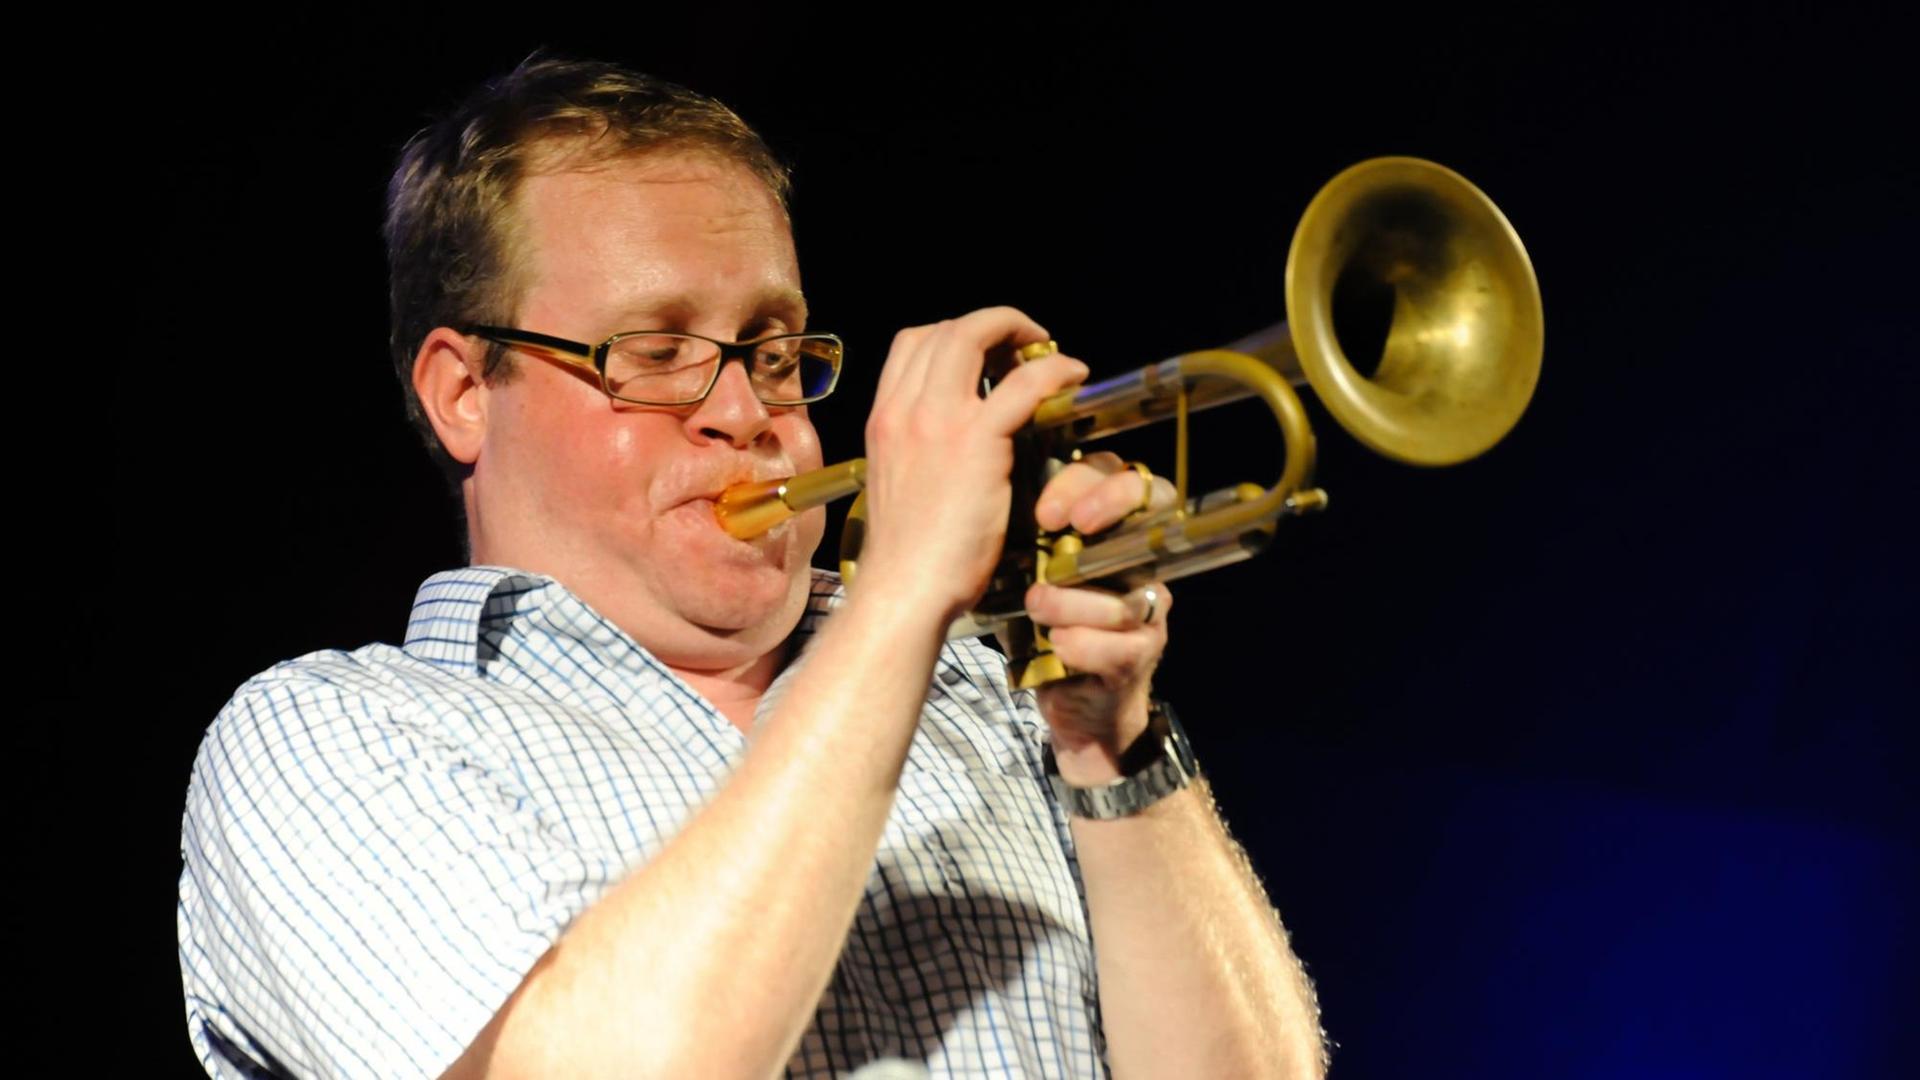 Der deutsche Jazztrompeter Axel Schlosser beim Jazzfestival Jazzbaltica 2015 am 04.07.2015 in Niendorf an der Ostsee.